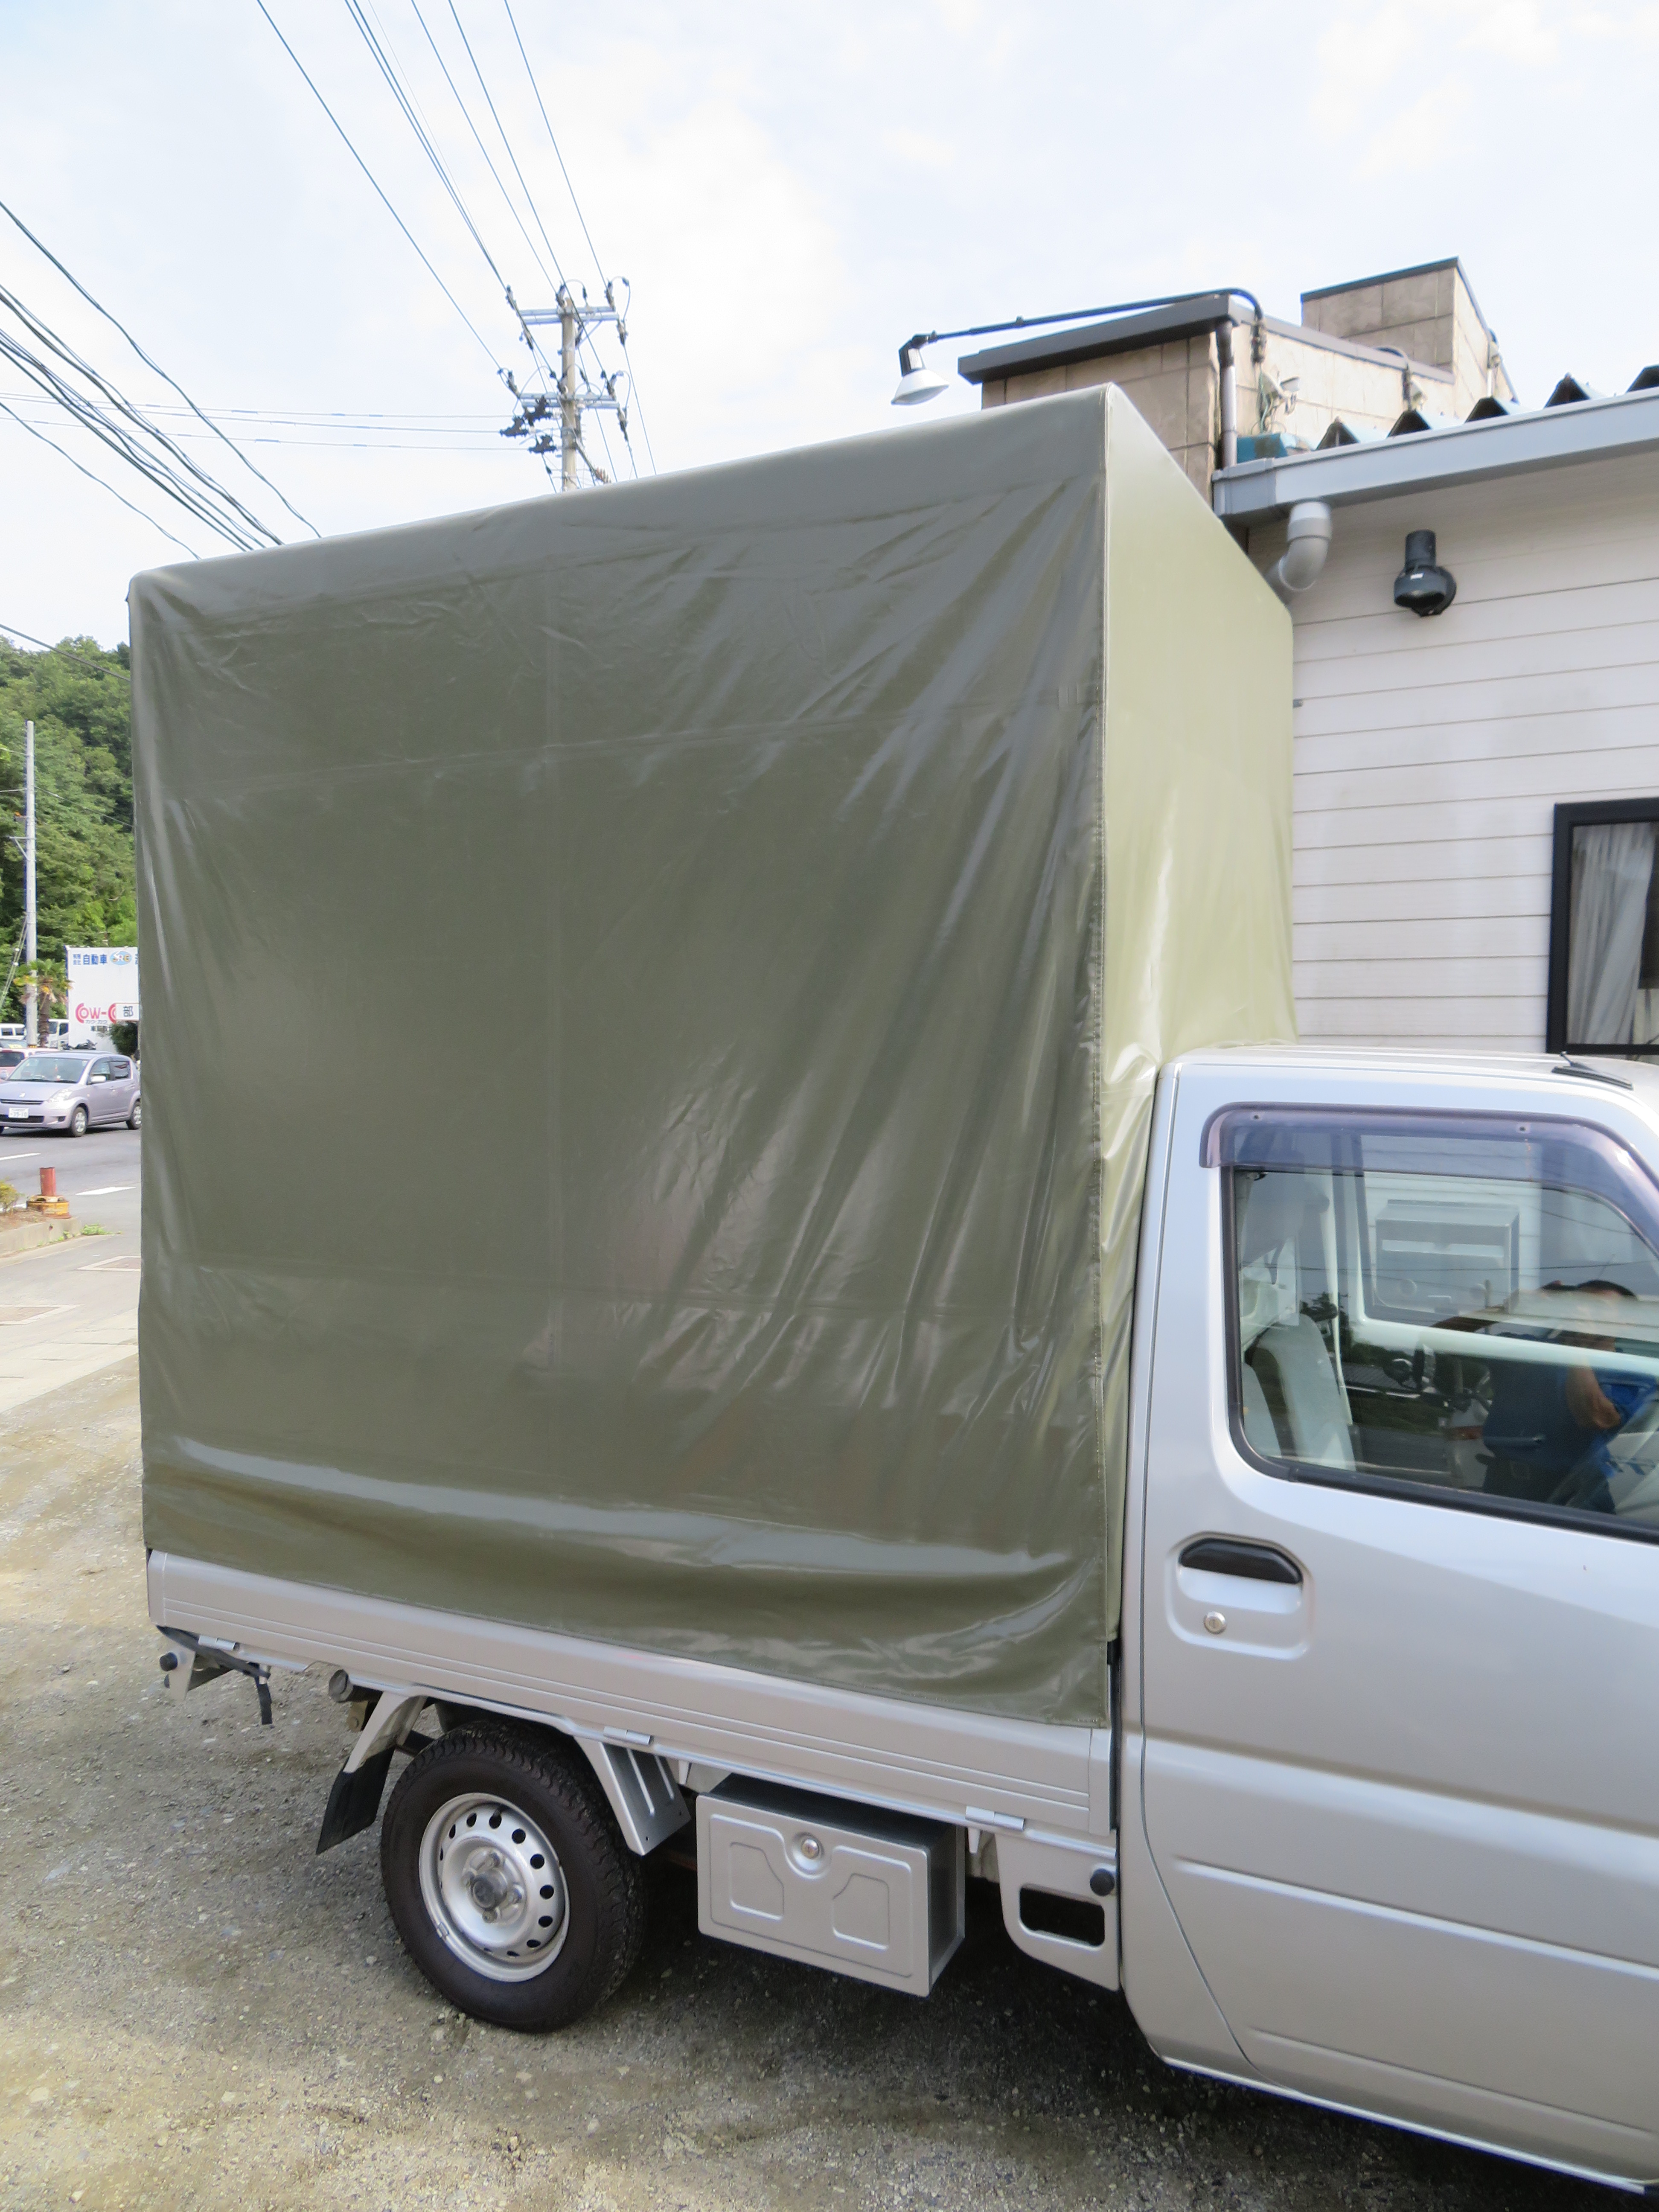 軽トラック幌シート | 伊藤幌店 | シート・テント・幌・カバーの製作